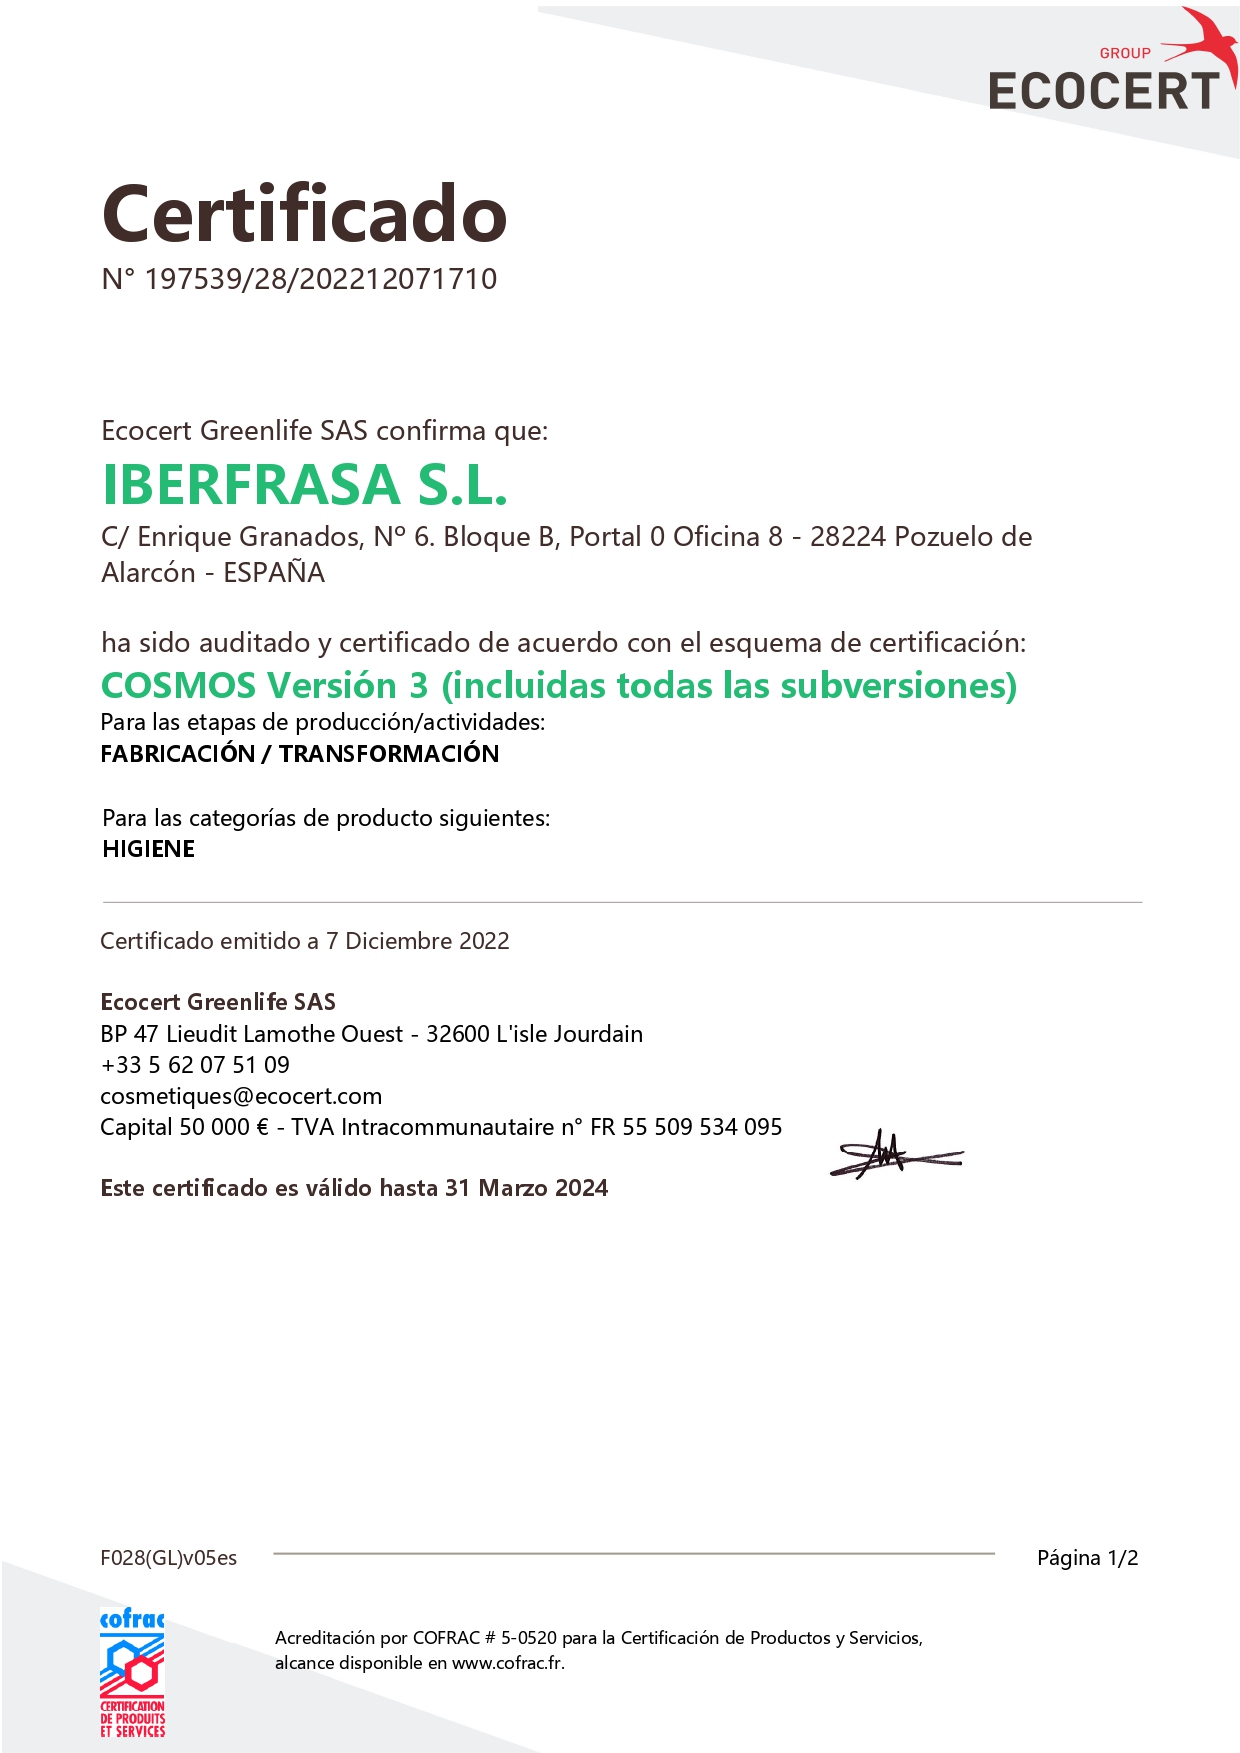 07_12_2022 - Certificado COSMOS IBERFRASA S.L. - 31_03_2024_page-0001